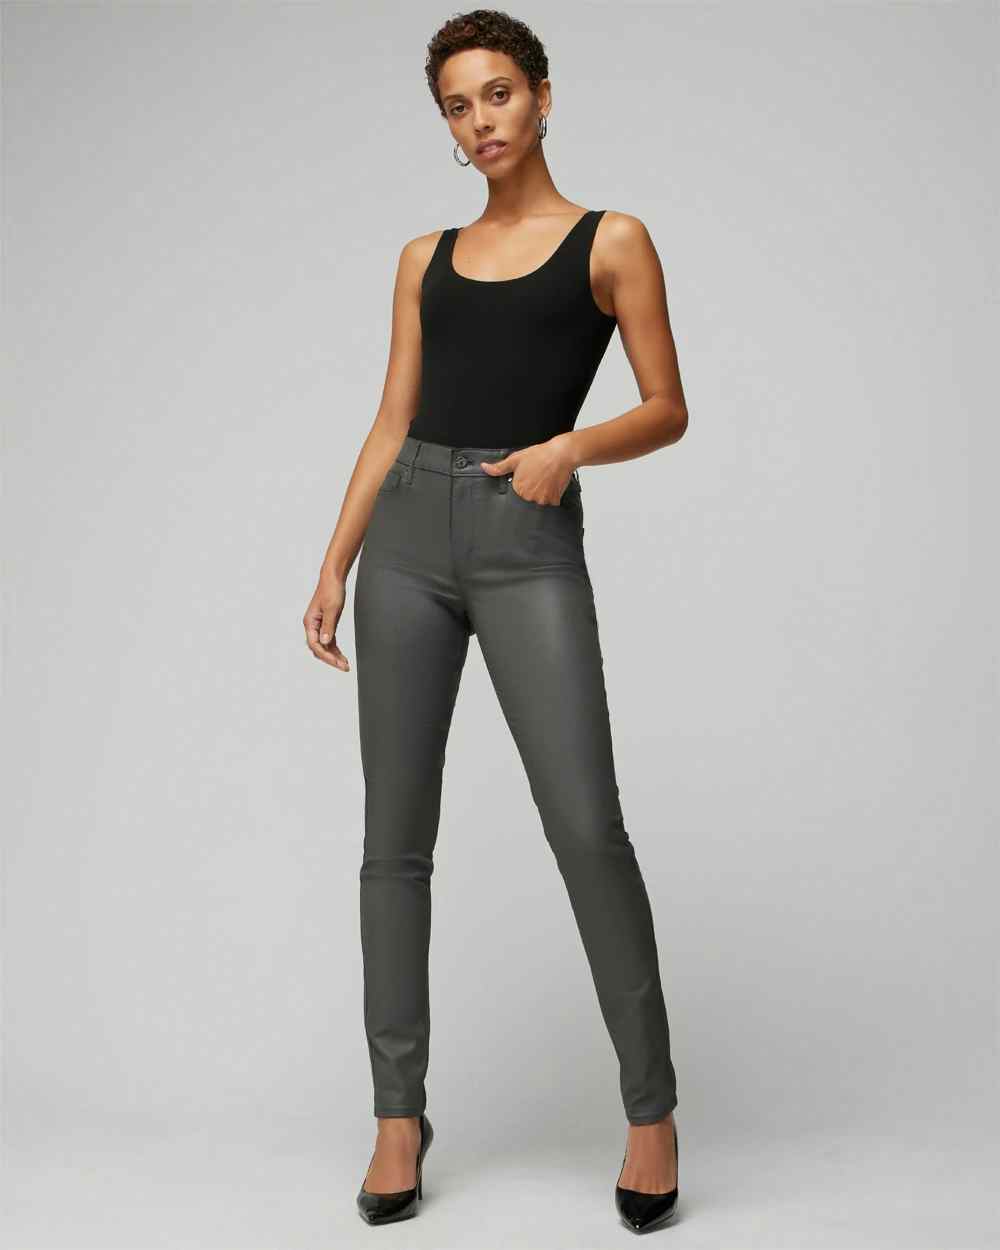 Shop Women's Skinny, Slim, Straight, Bootcut, & Girlfriend Jeans ...